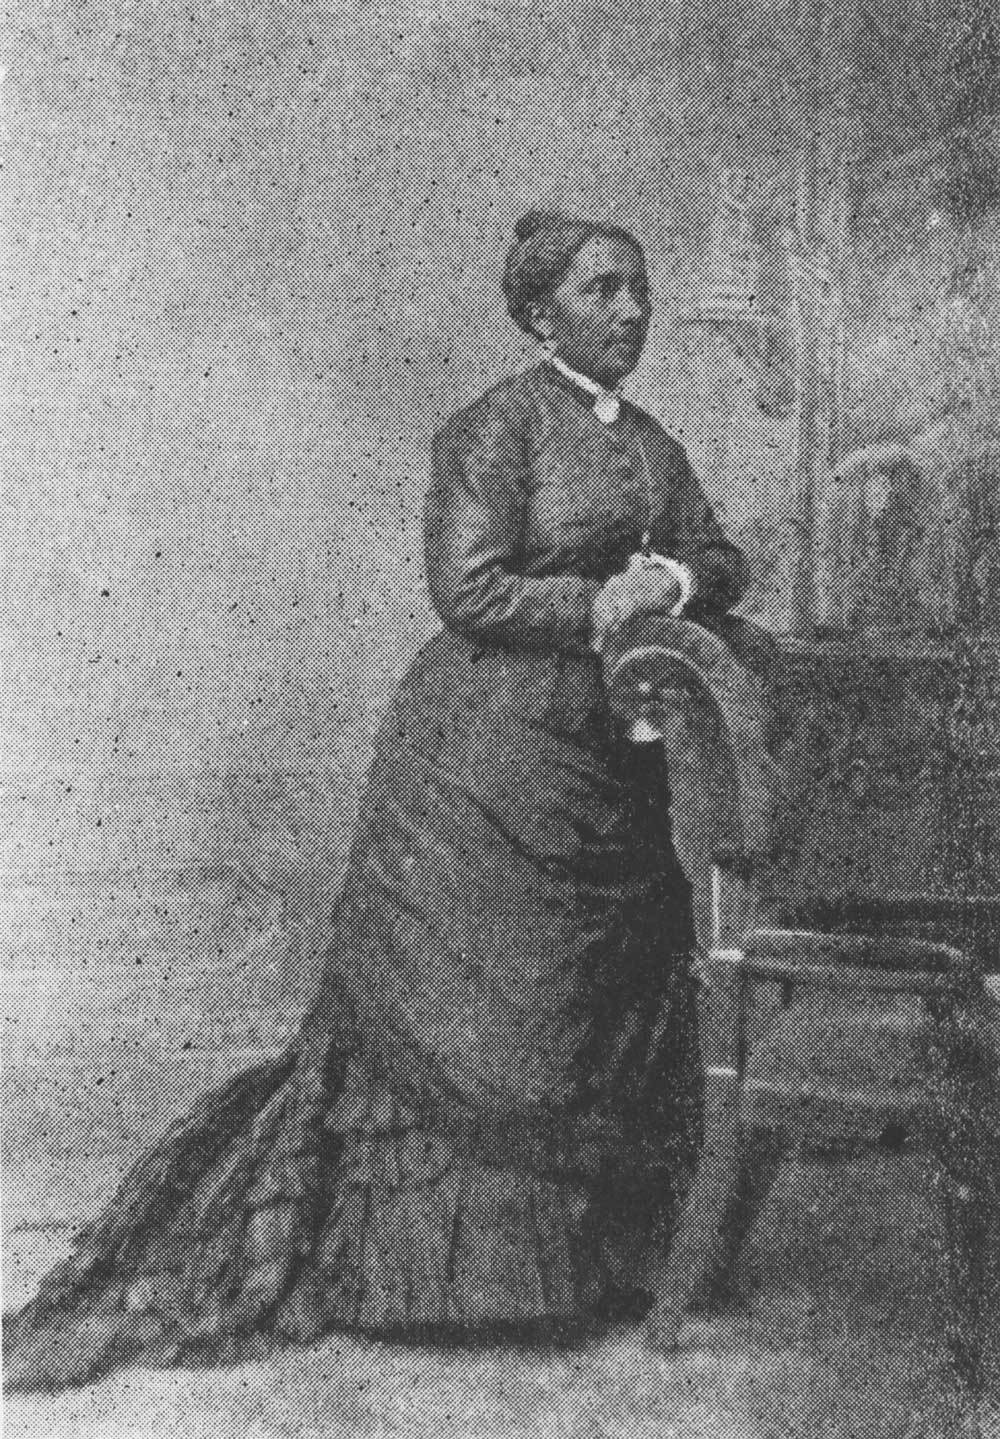 Um esboço de uma mulher com um vestido do século 19 encostado em uma cadeira.